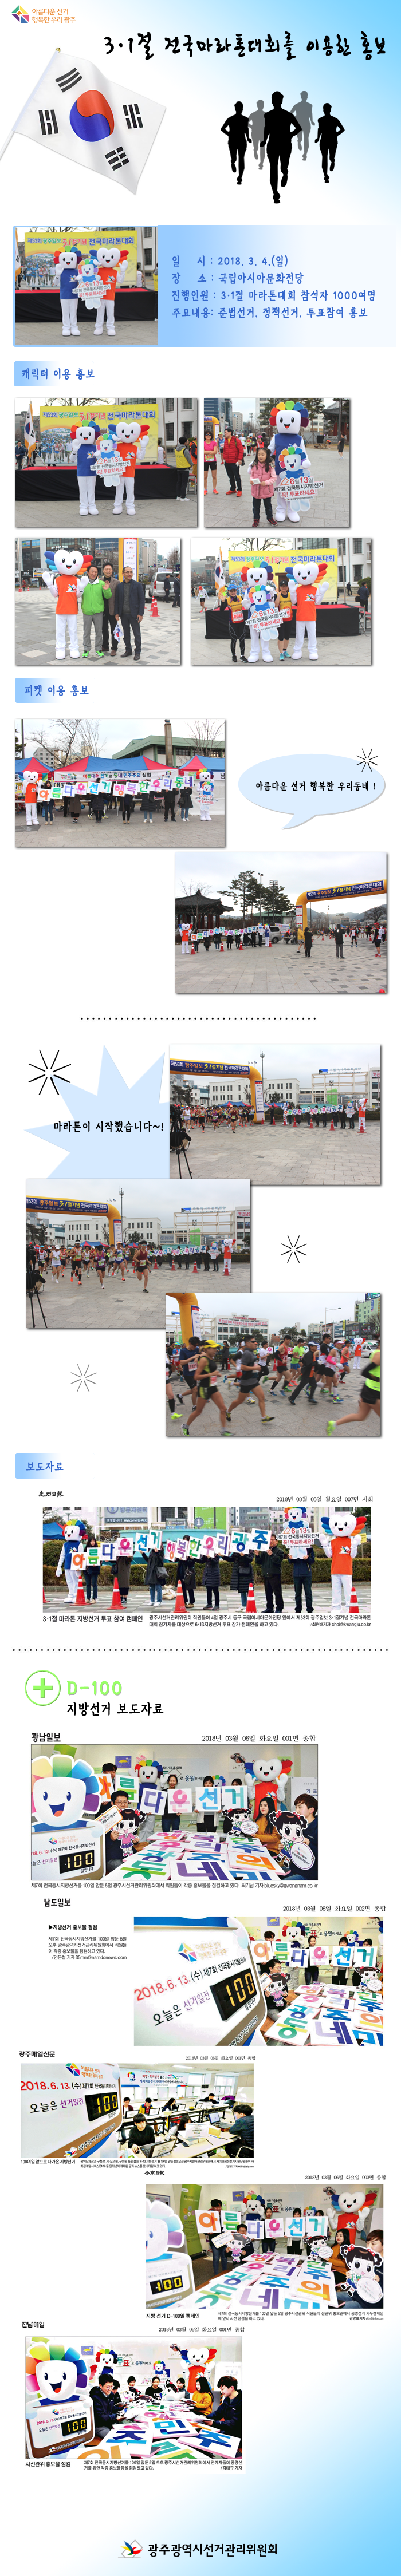 3·1절 전국마라톤대회를 이용한 홍보